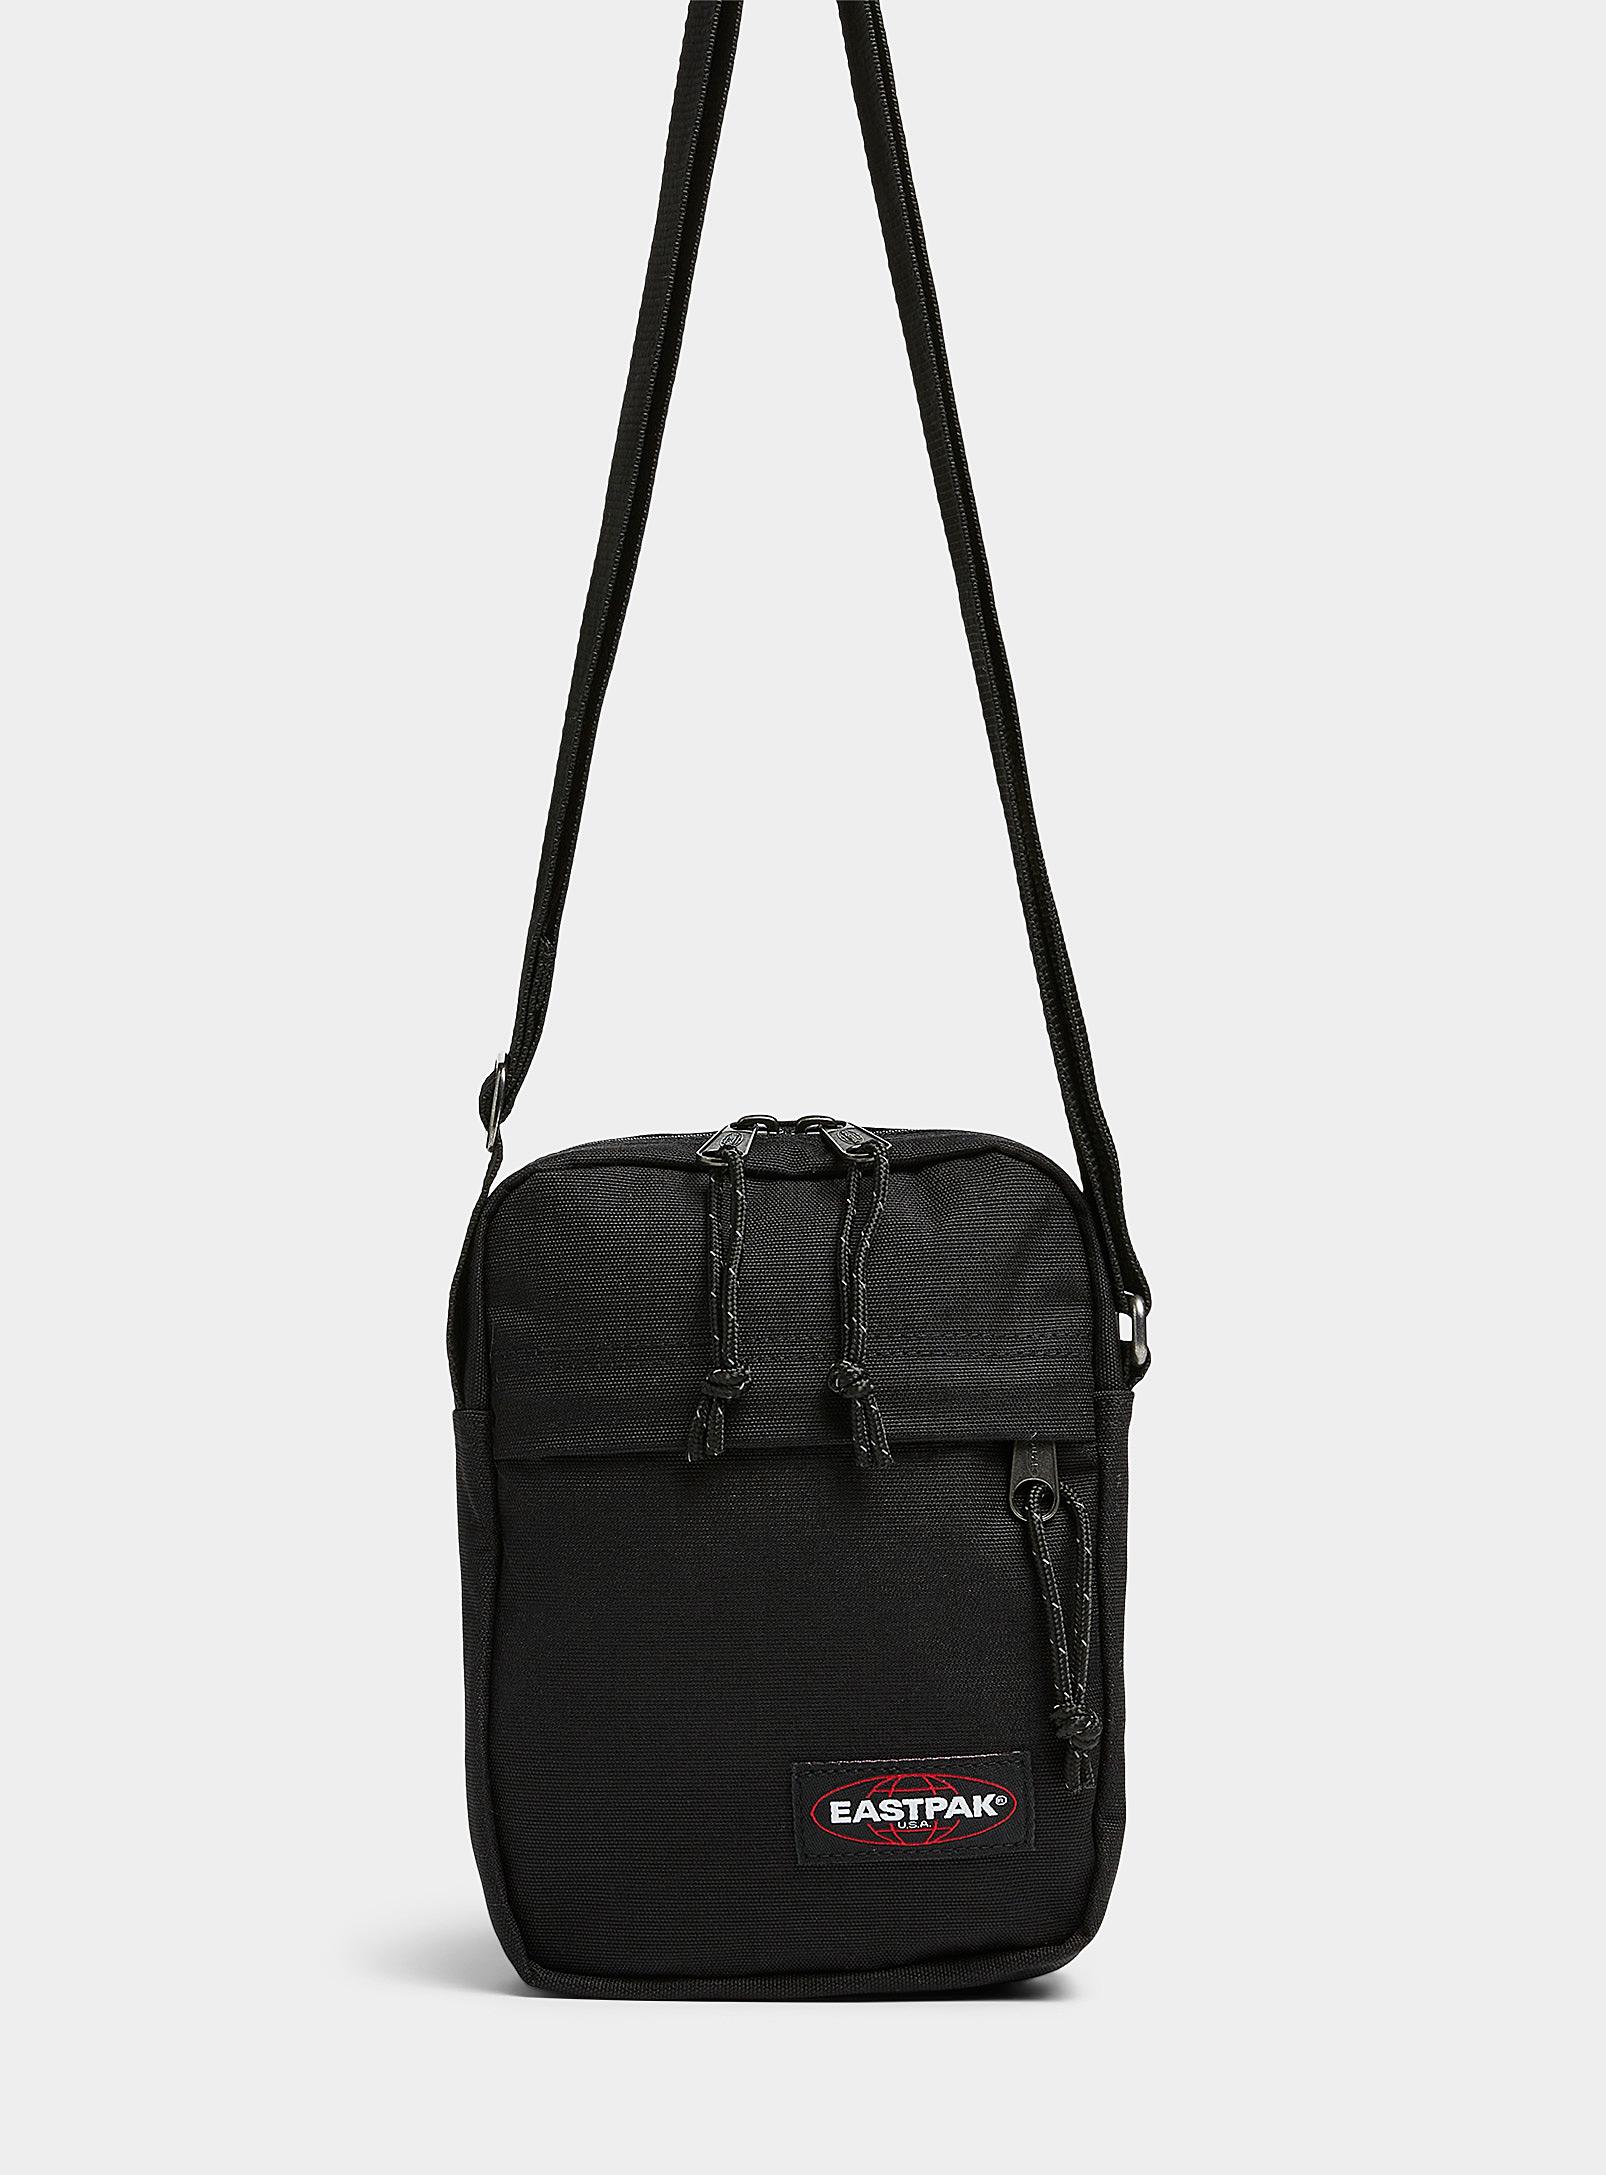 Eastpak The One Shoulder Bag in Black | Lyst